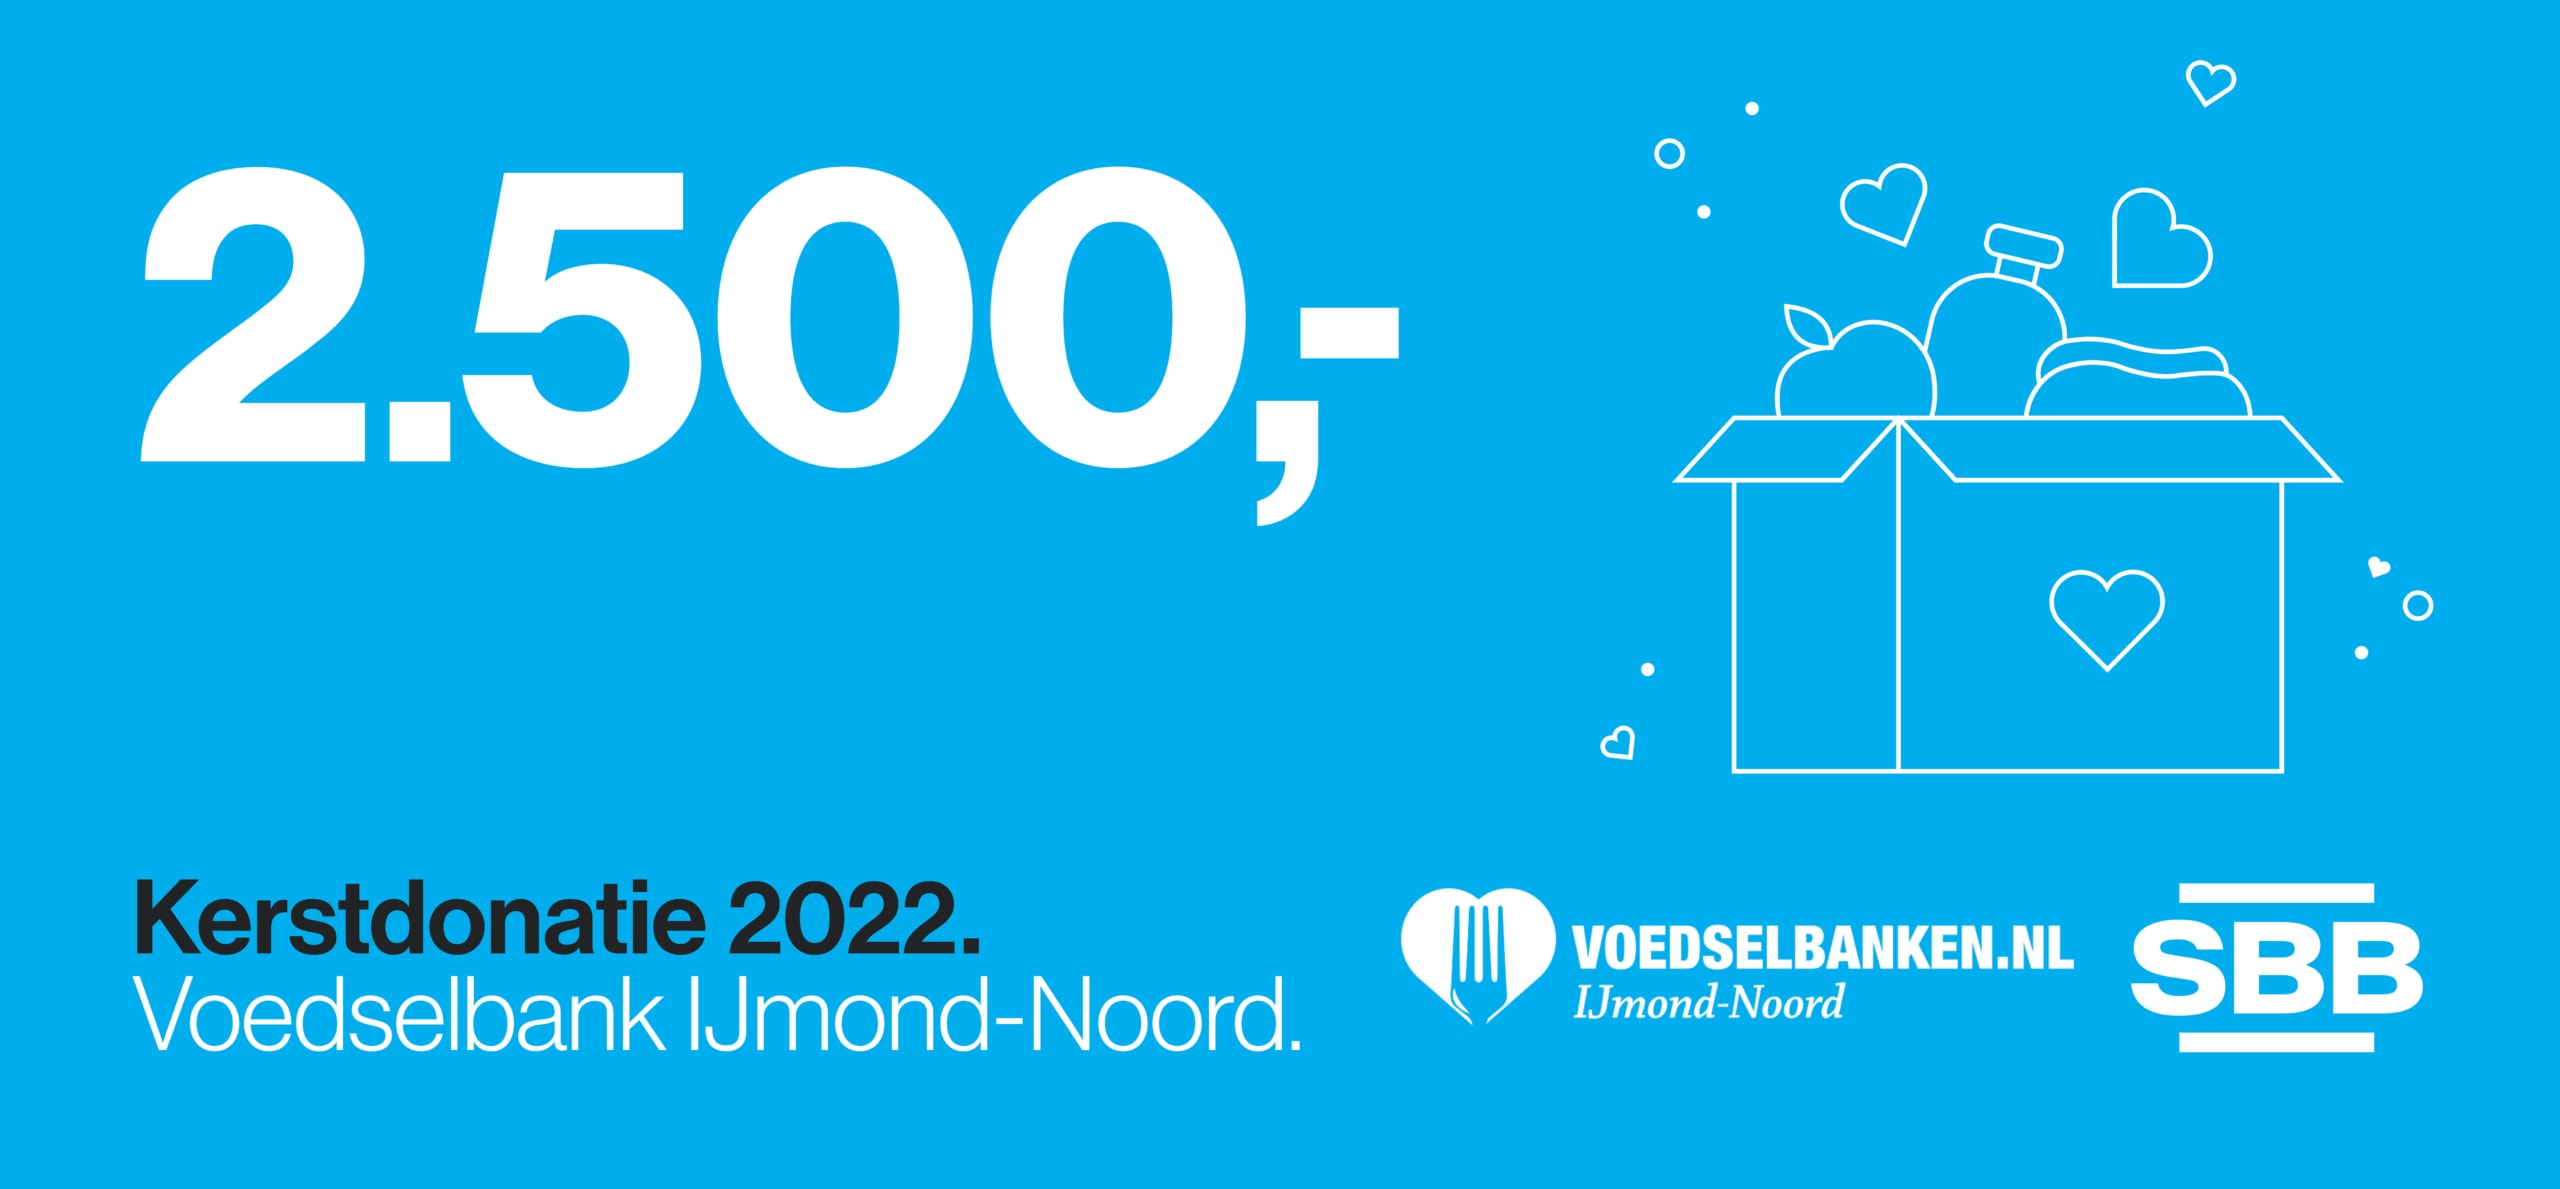 SBB doneert 2.500 euro aan Voedselbank IJmond-Noord